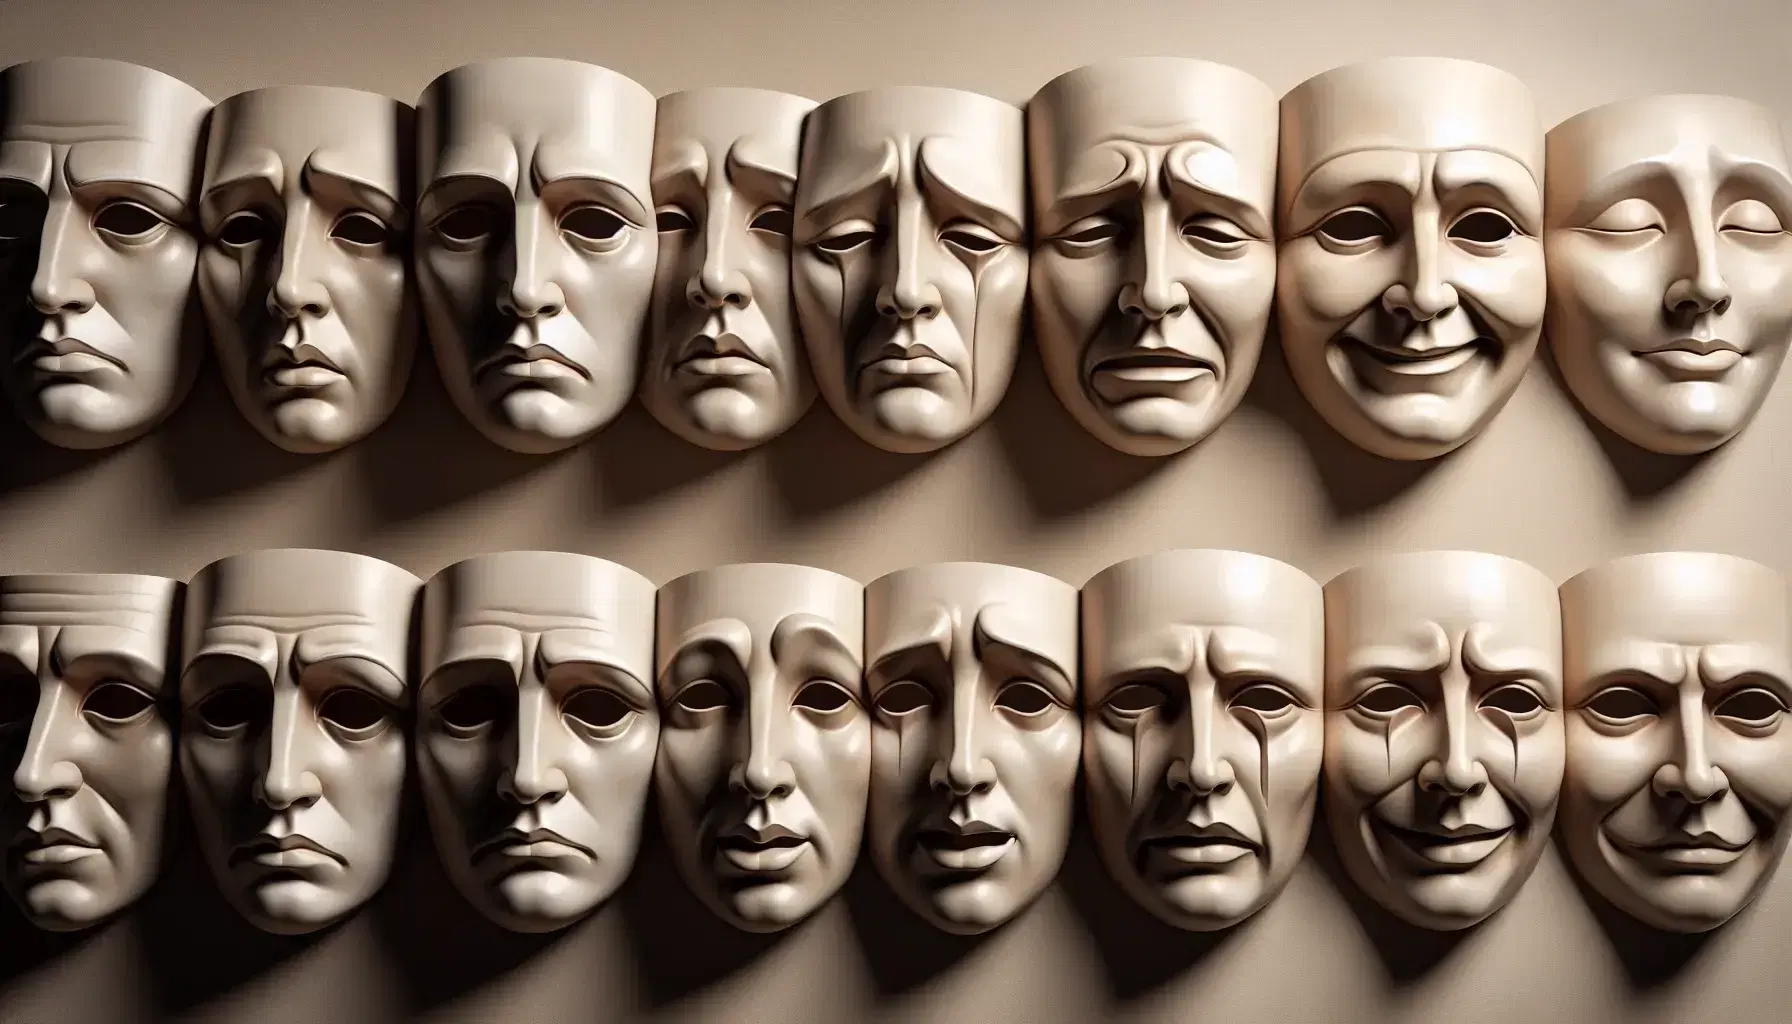 Colección de máscaras teatrales con expresiones variadas, desde desconfianza hasta desdén, alineadas sobre fondo neutro.